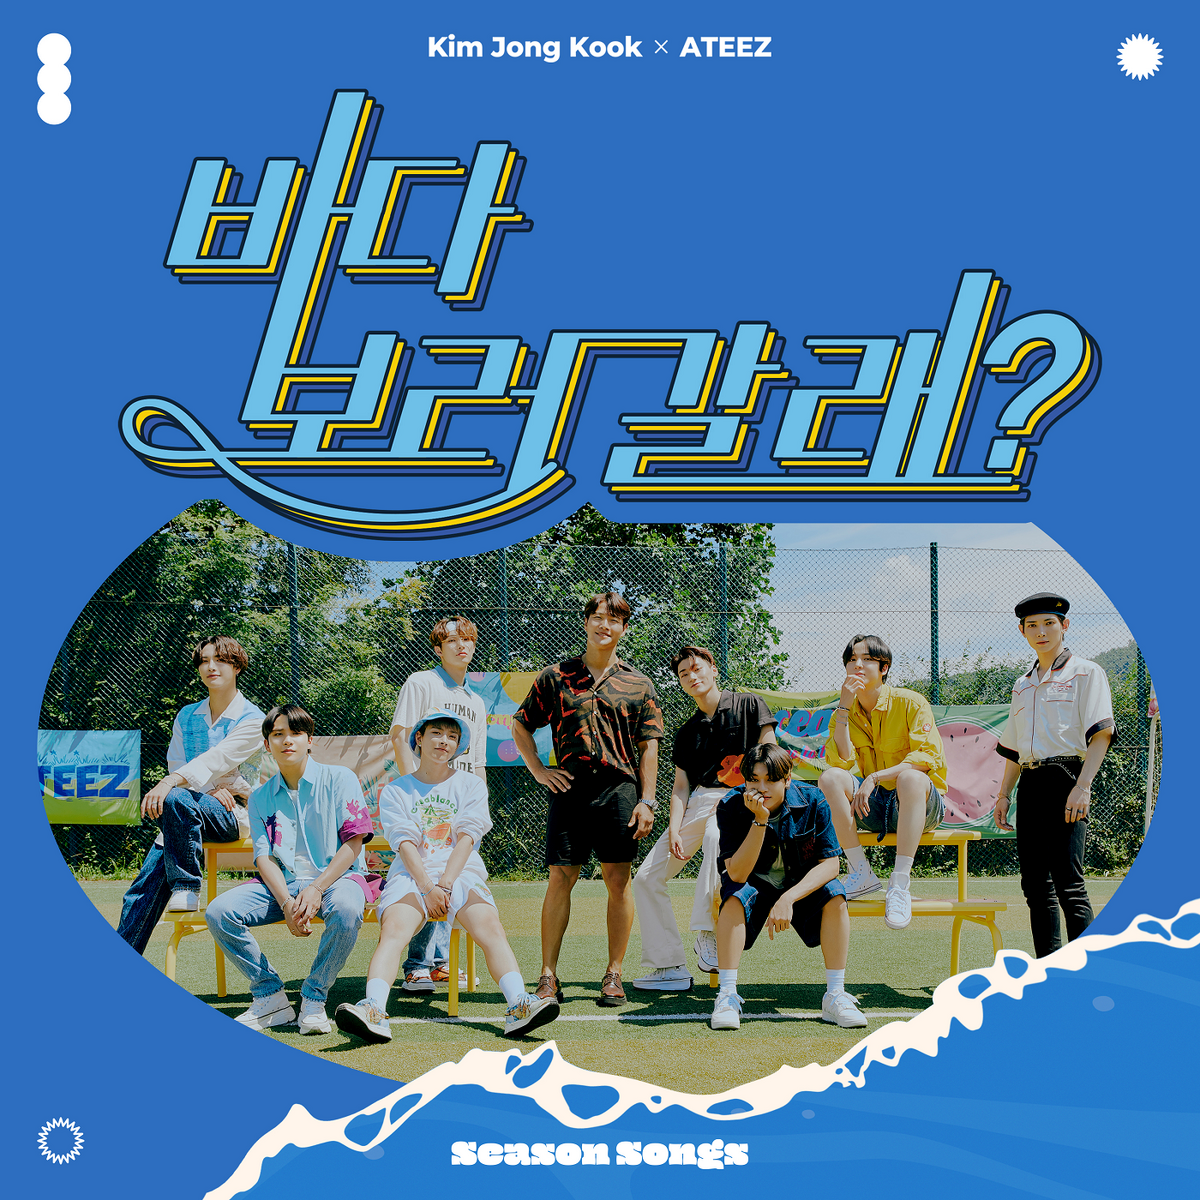 Season Songs | Kpop Wiki | Fandom